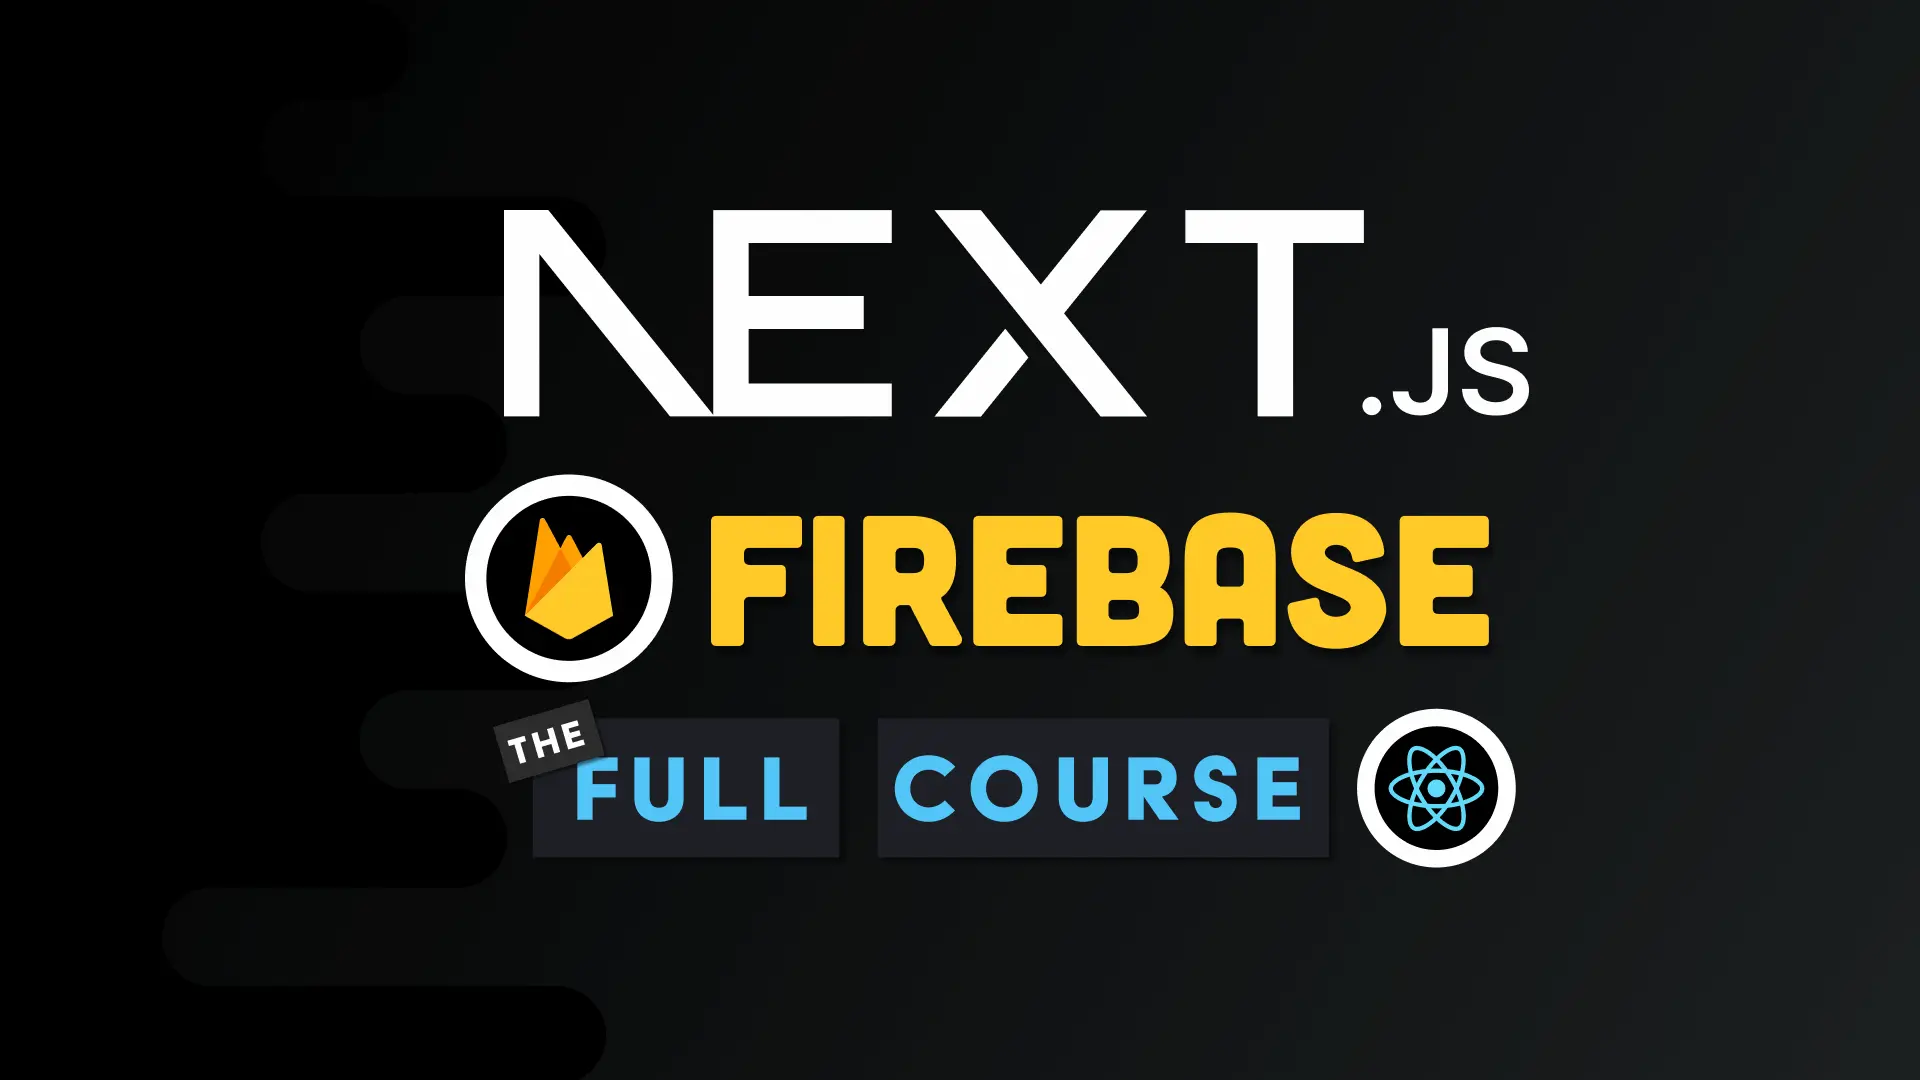 Next.js Firebase Full Course